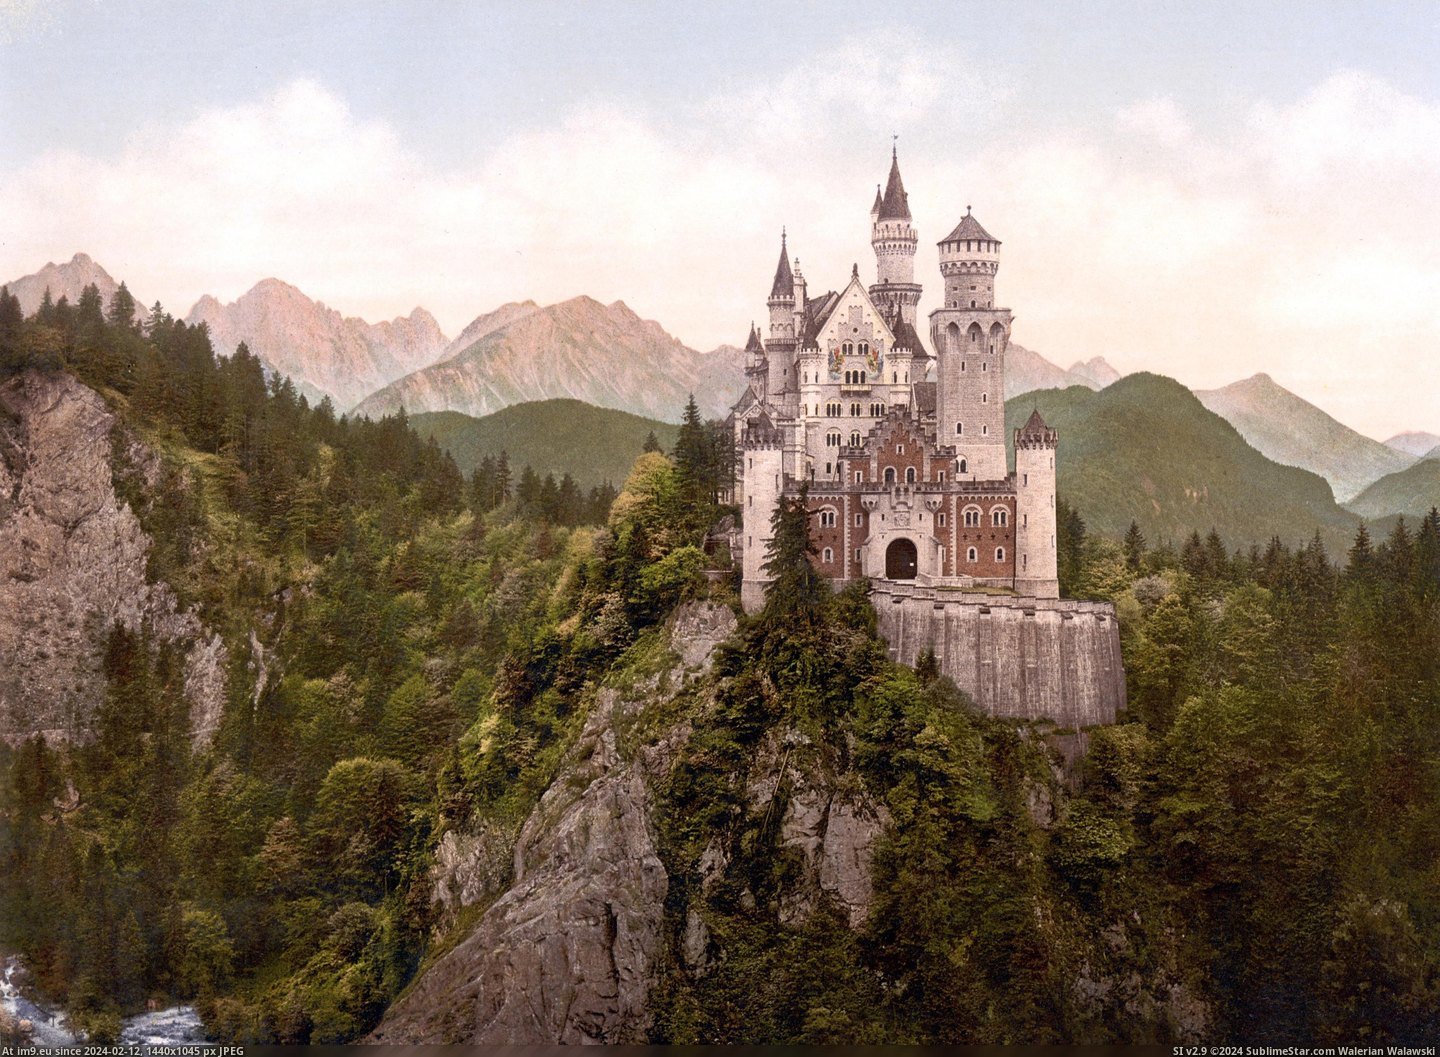 #Castle #Neuschwanstein #Loc #Print #Rotated Neuschwanstein Castle Loc Print Rotated Pic. (Image of album Schloss Neuschwanstein (Neuschwanstein Castle)))